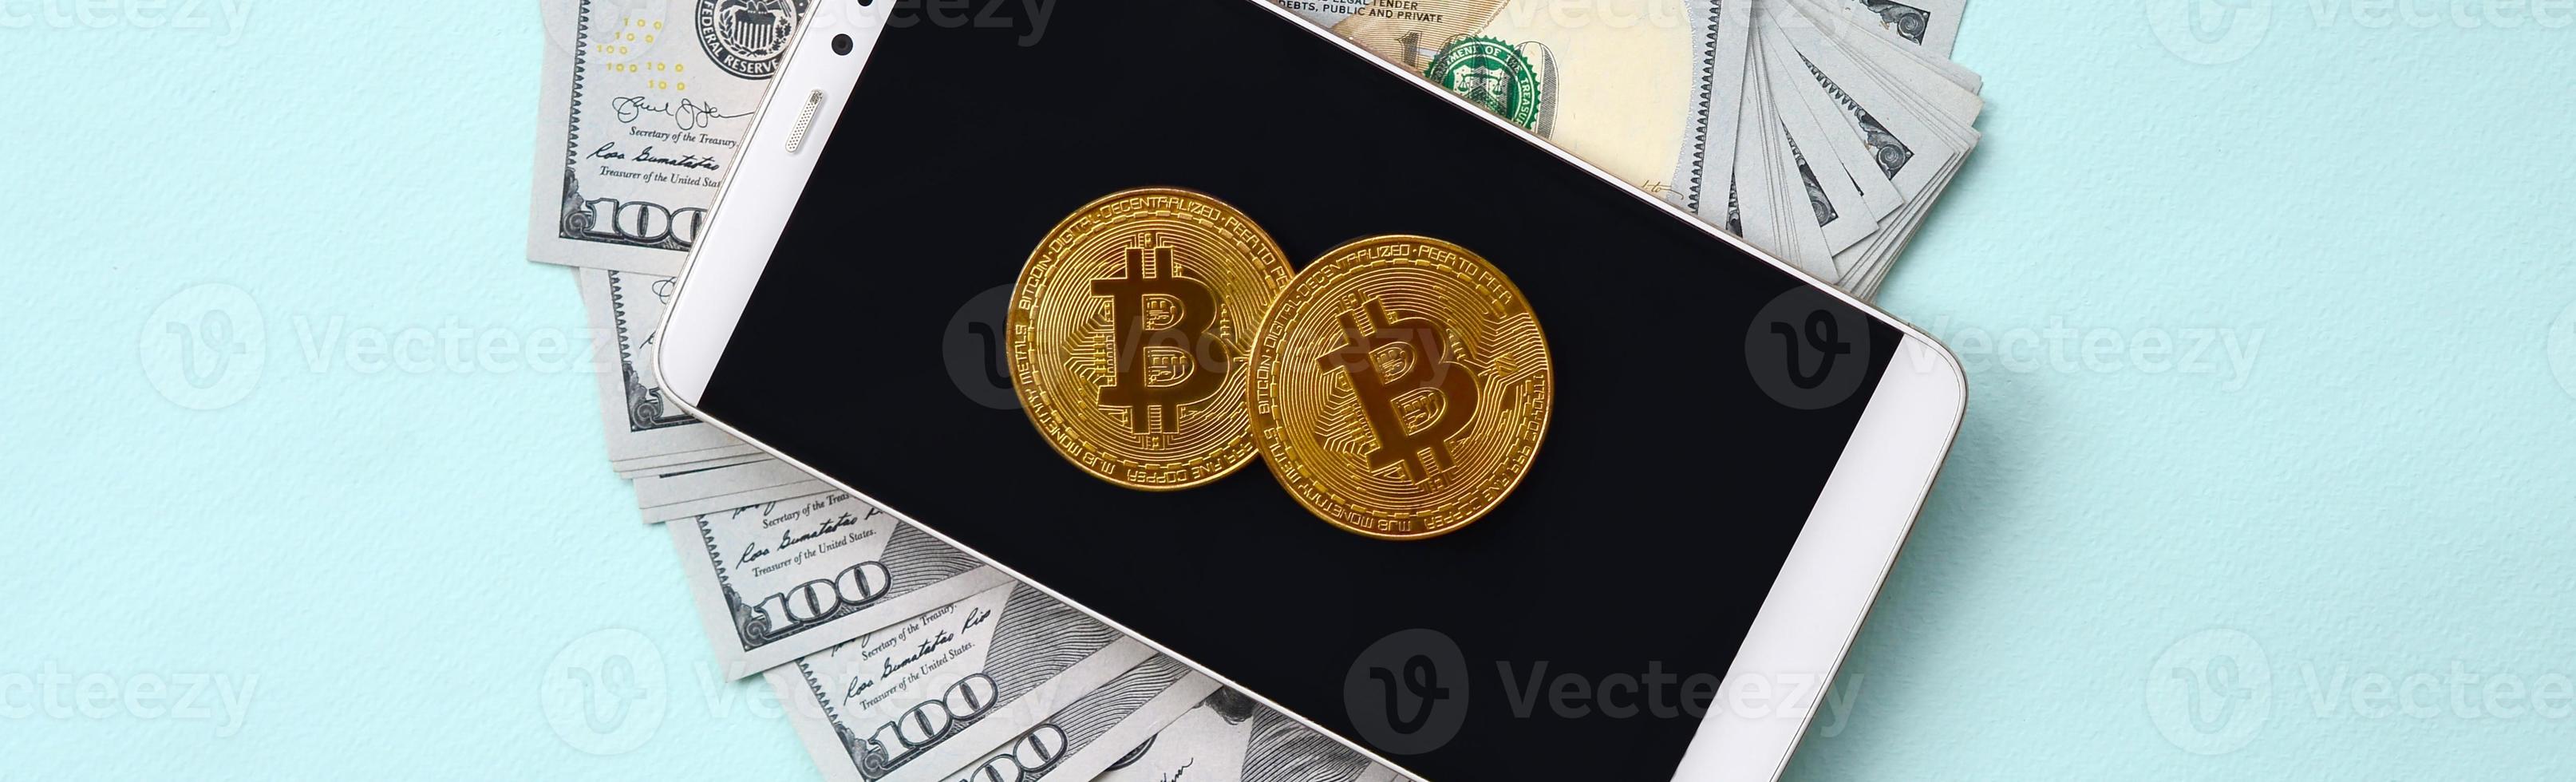 bitcoins está em um smartphone e notas de cem dólares em um fundo azul claro foto